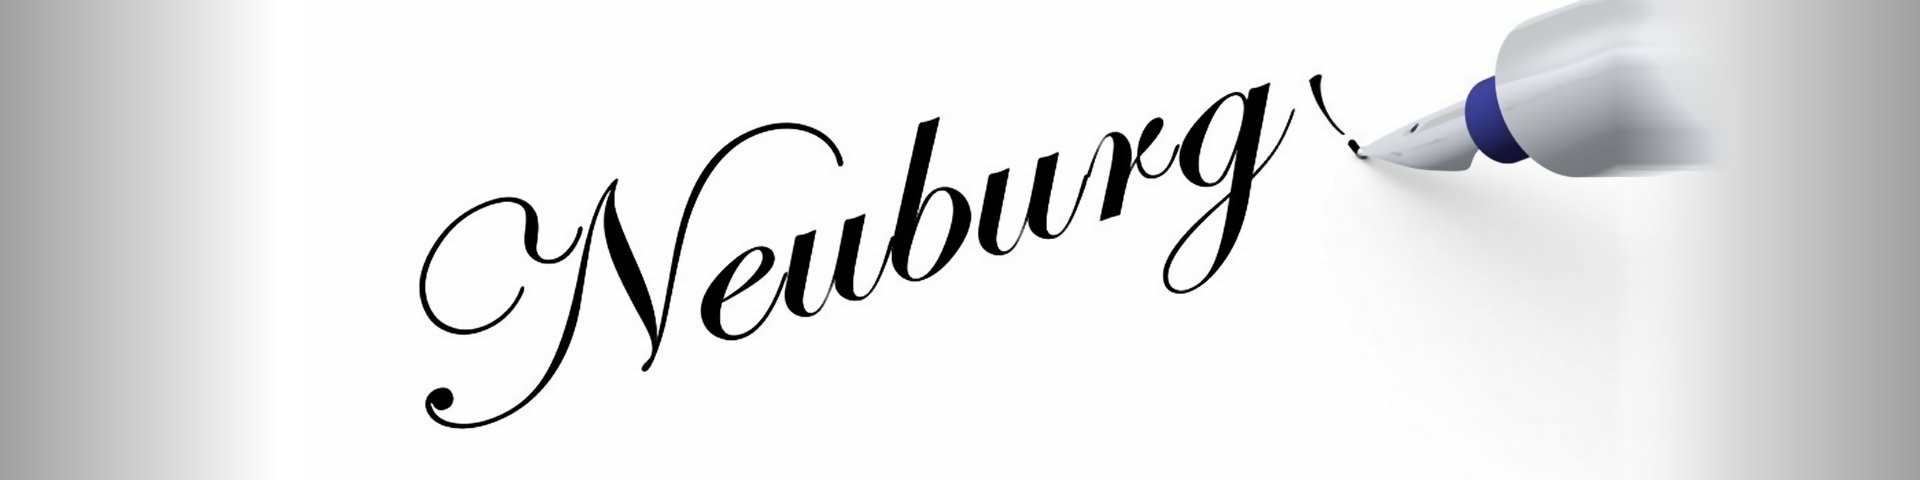 Das Wort Neuburg wird auf einen weissen Hintergrund geschrieben.